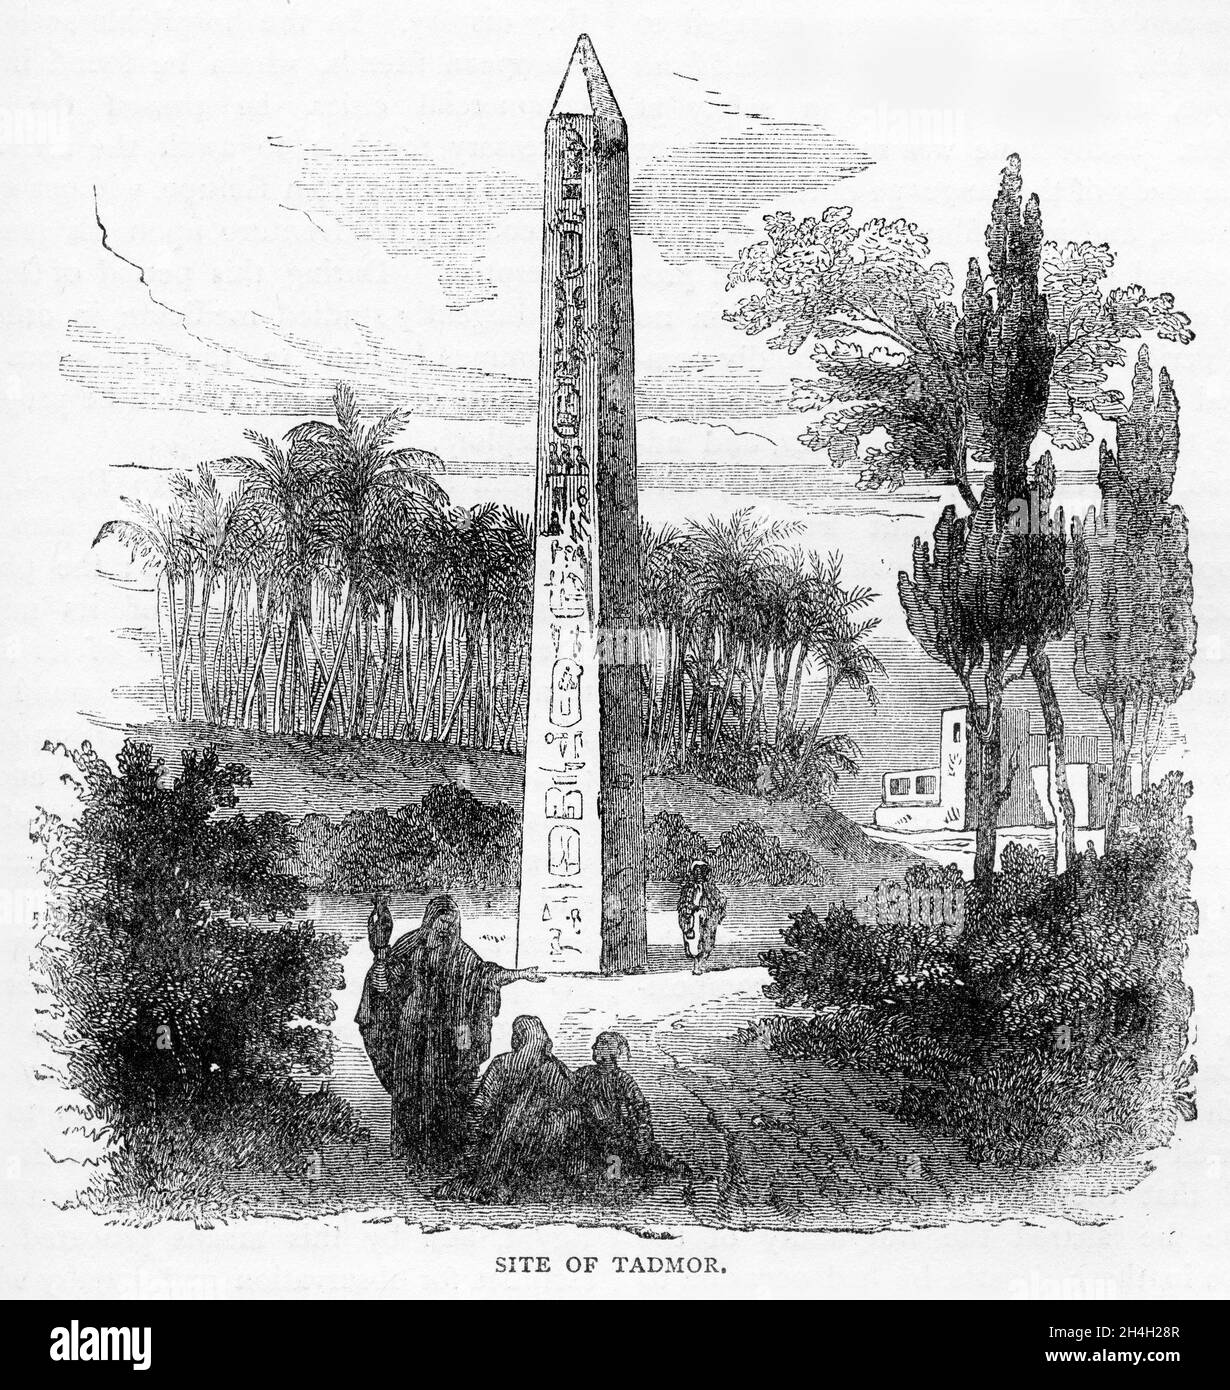 Stich eines Obelisken bei Tadmor in Ägypten, aus einer Publikation um 1890 Stockfoto